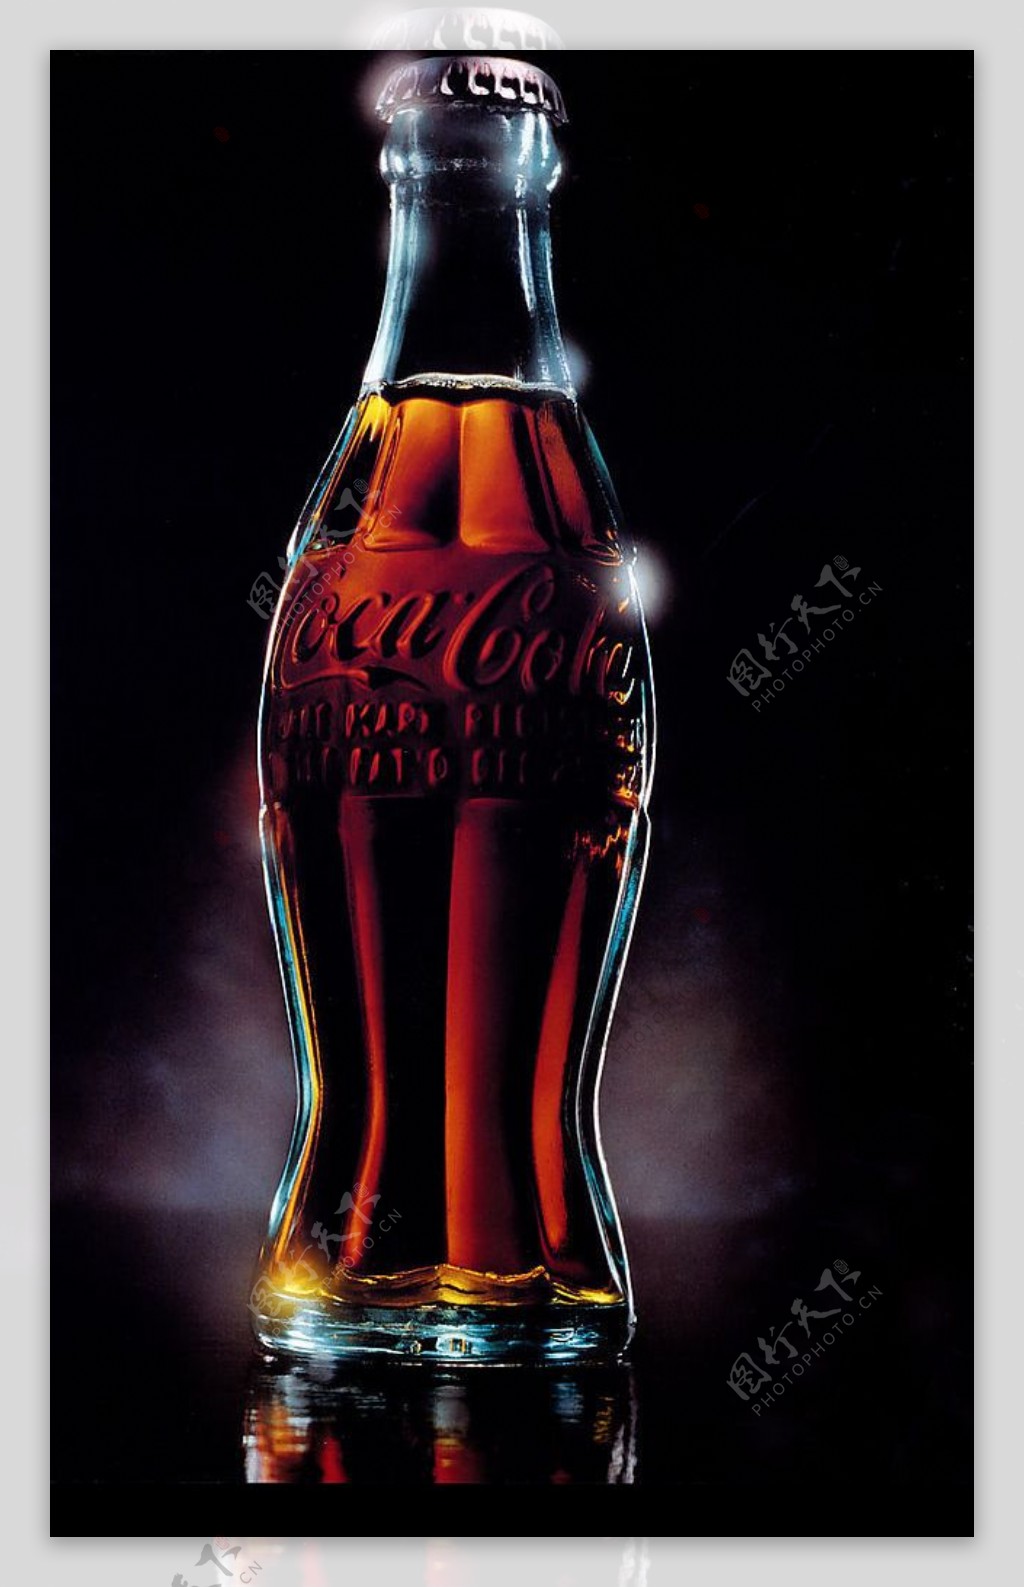 可乐瓶子图片